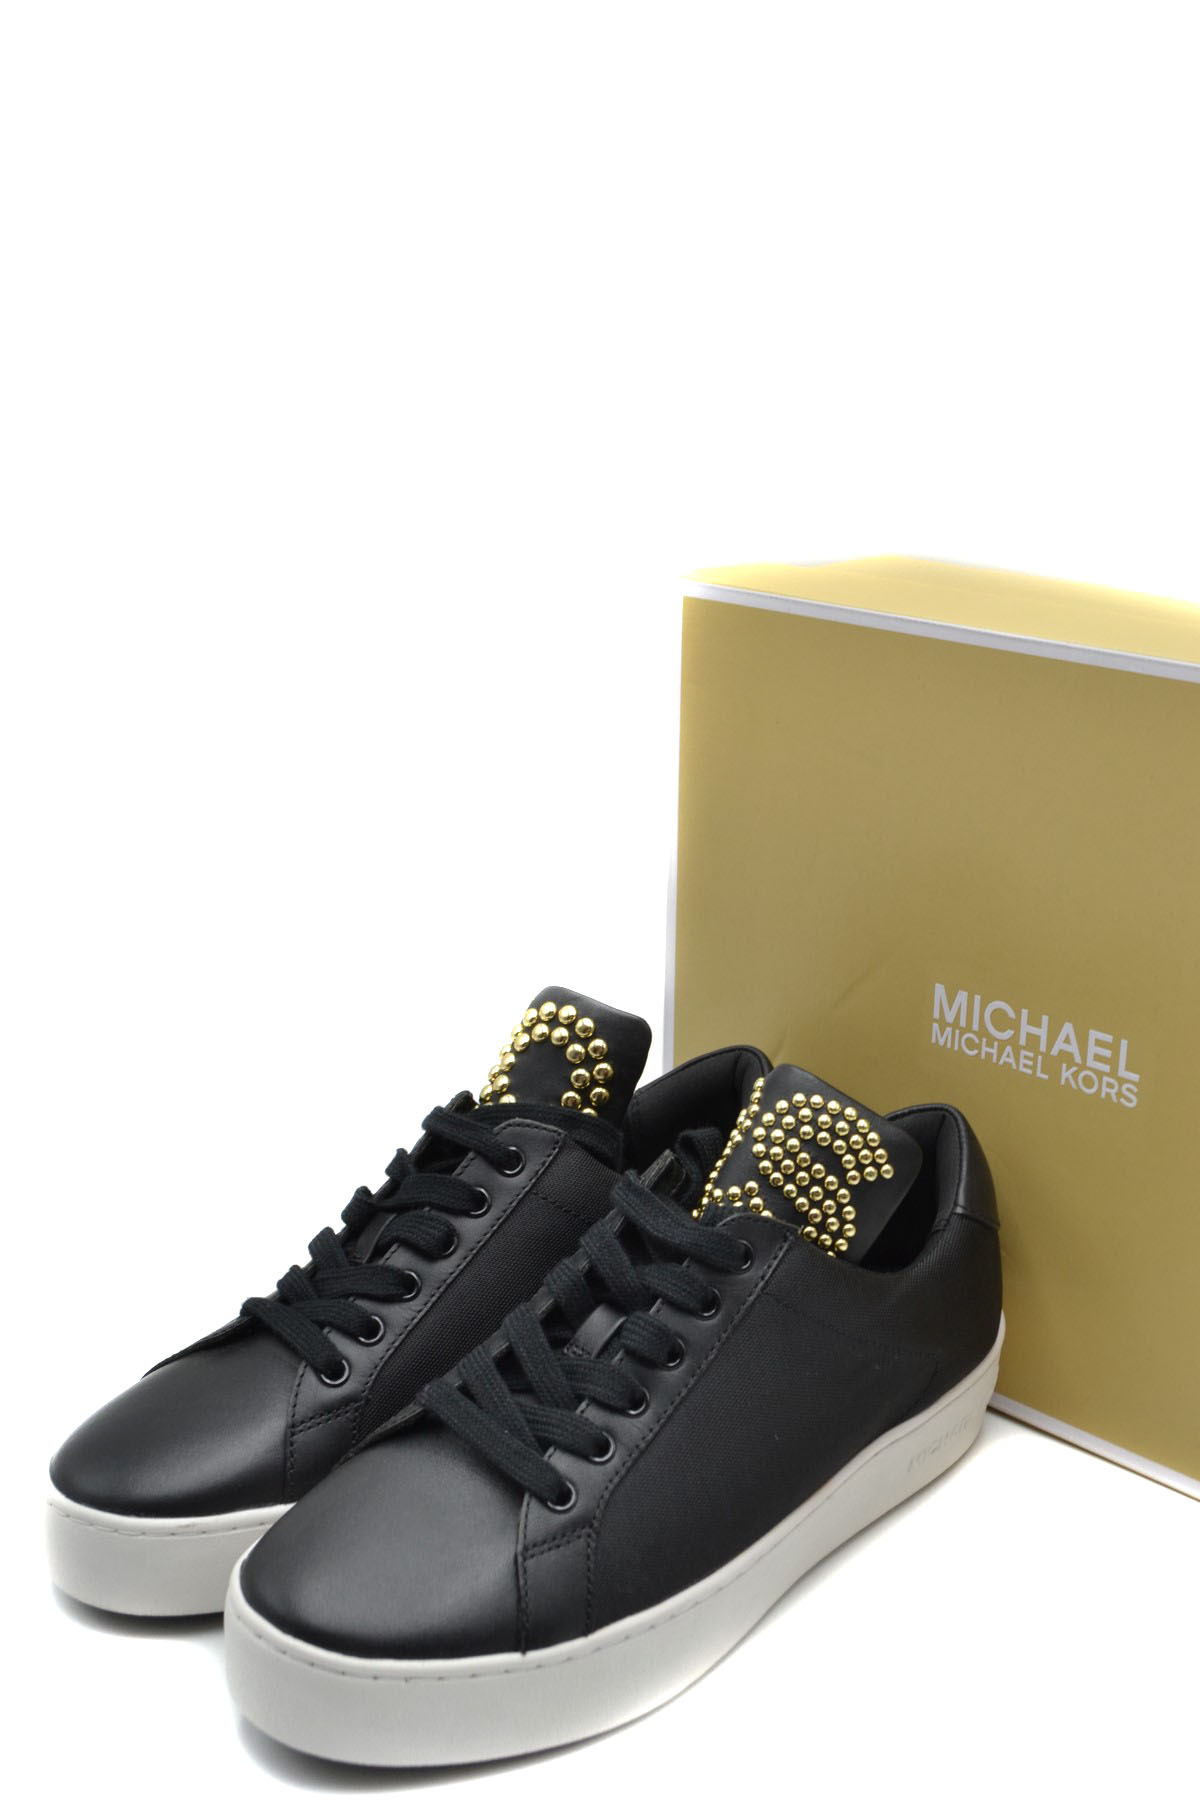 Sneaker Blackgold Michael Kors  Le Follie Shop